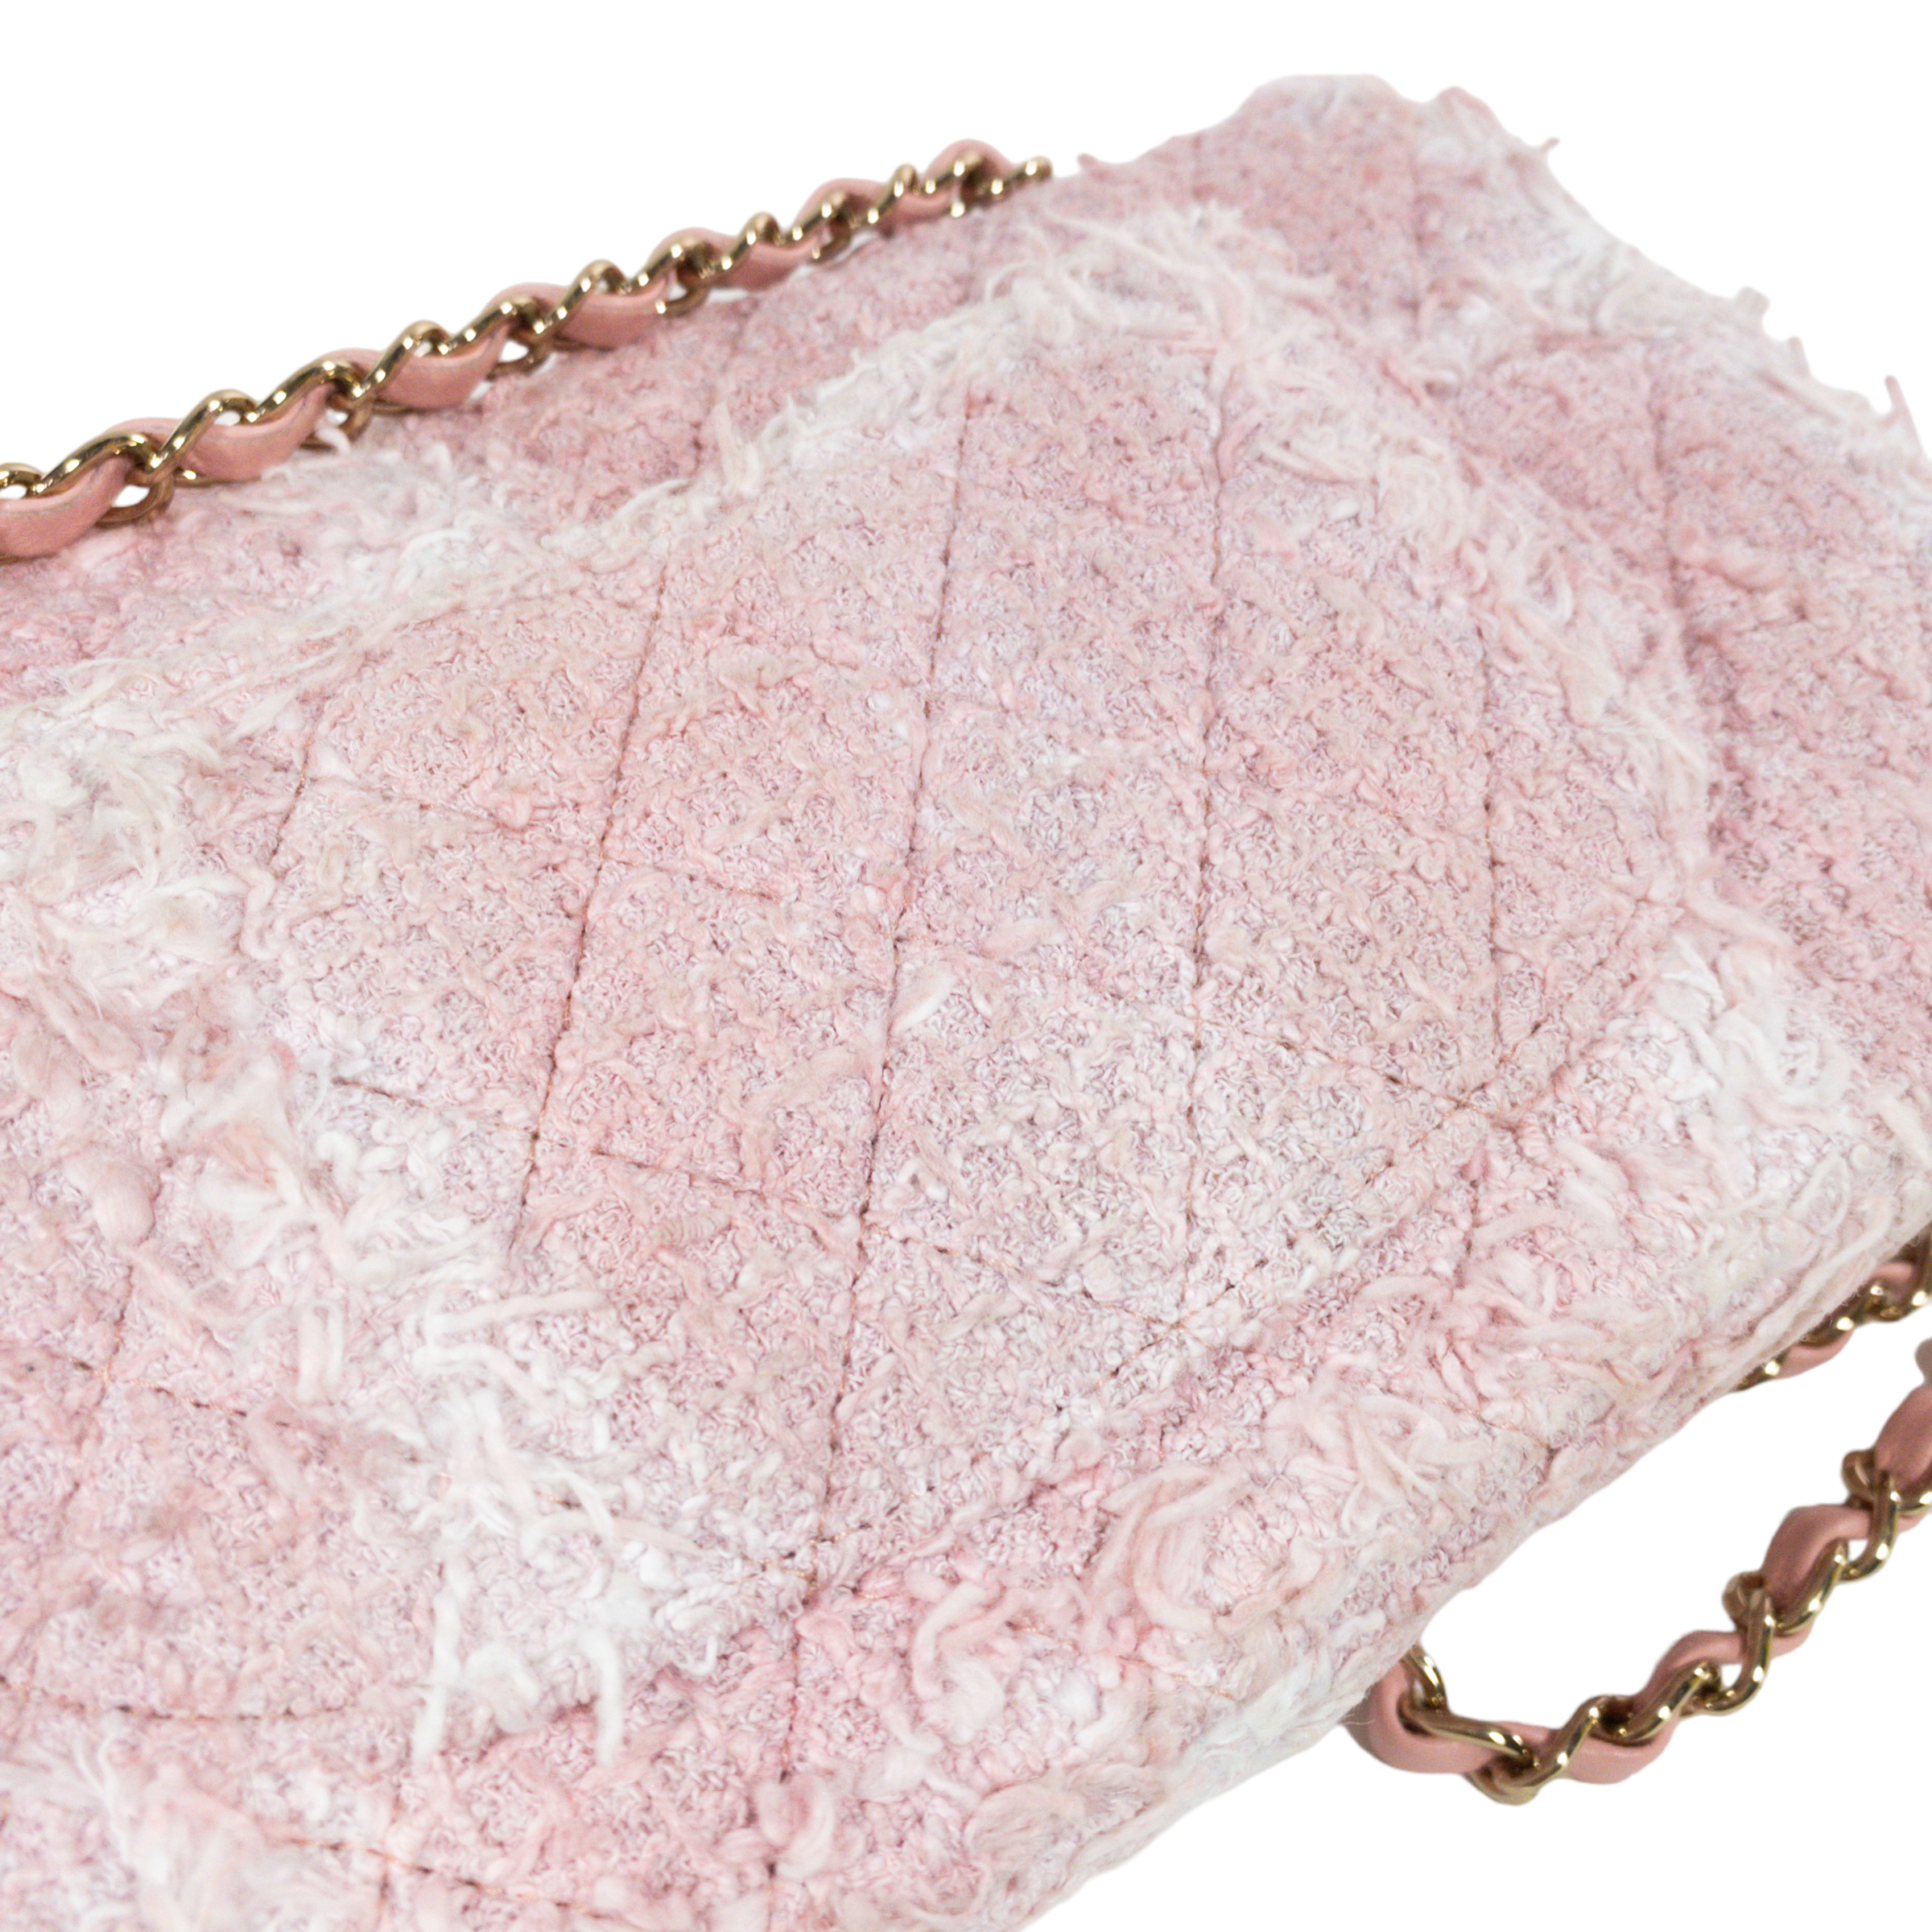 Chanel Pink Shearling Medium 19 Flap Shoulder Bag Chanel